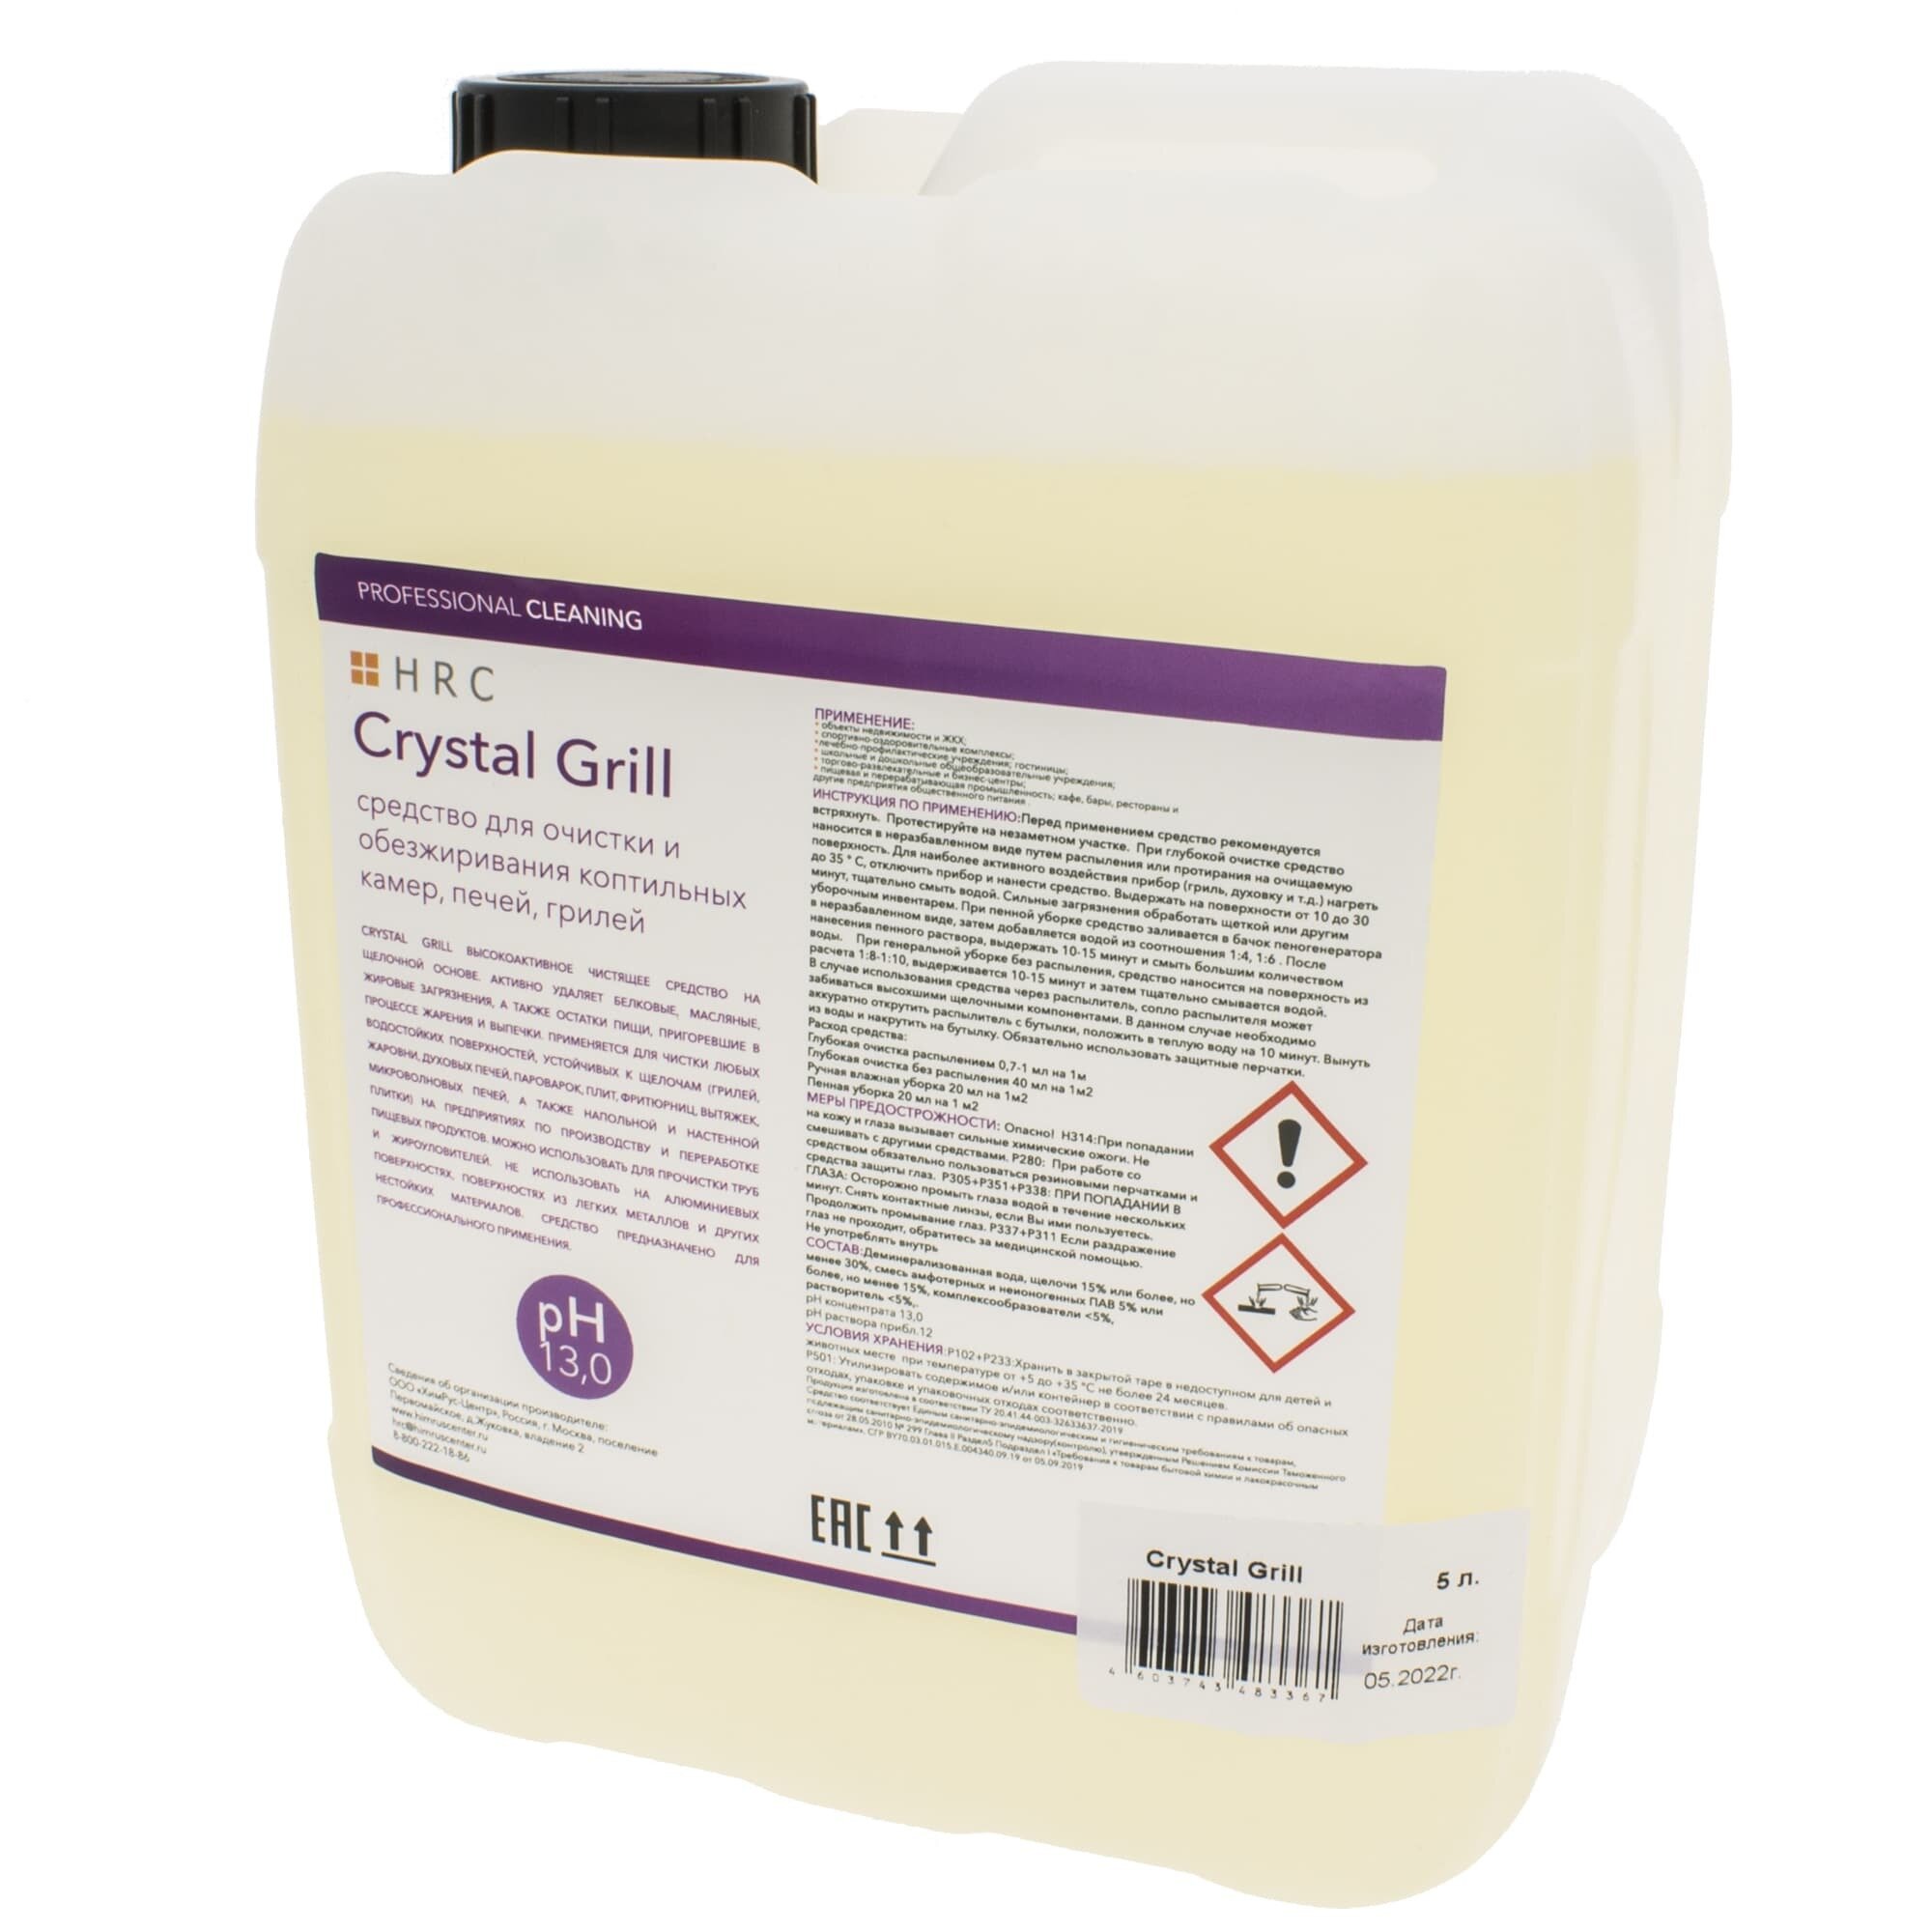 Универсальное средство Crystal Grill 5 л для очистки и обезжиривания печей, грилей (HRC)